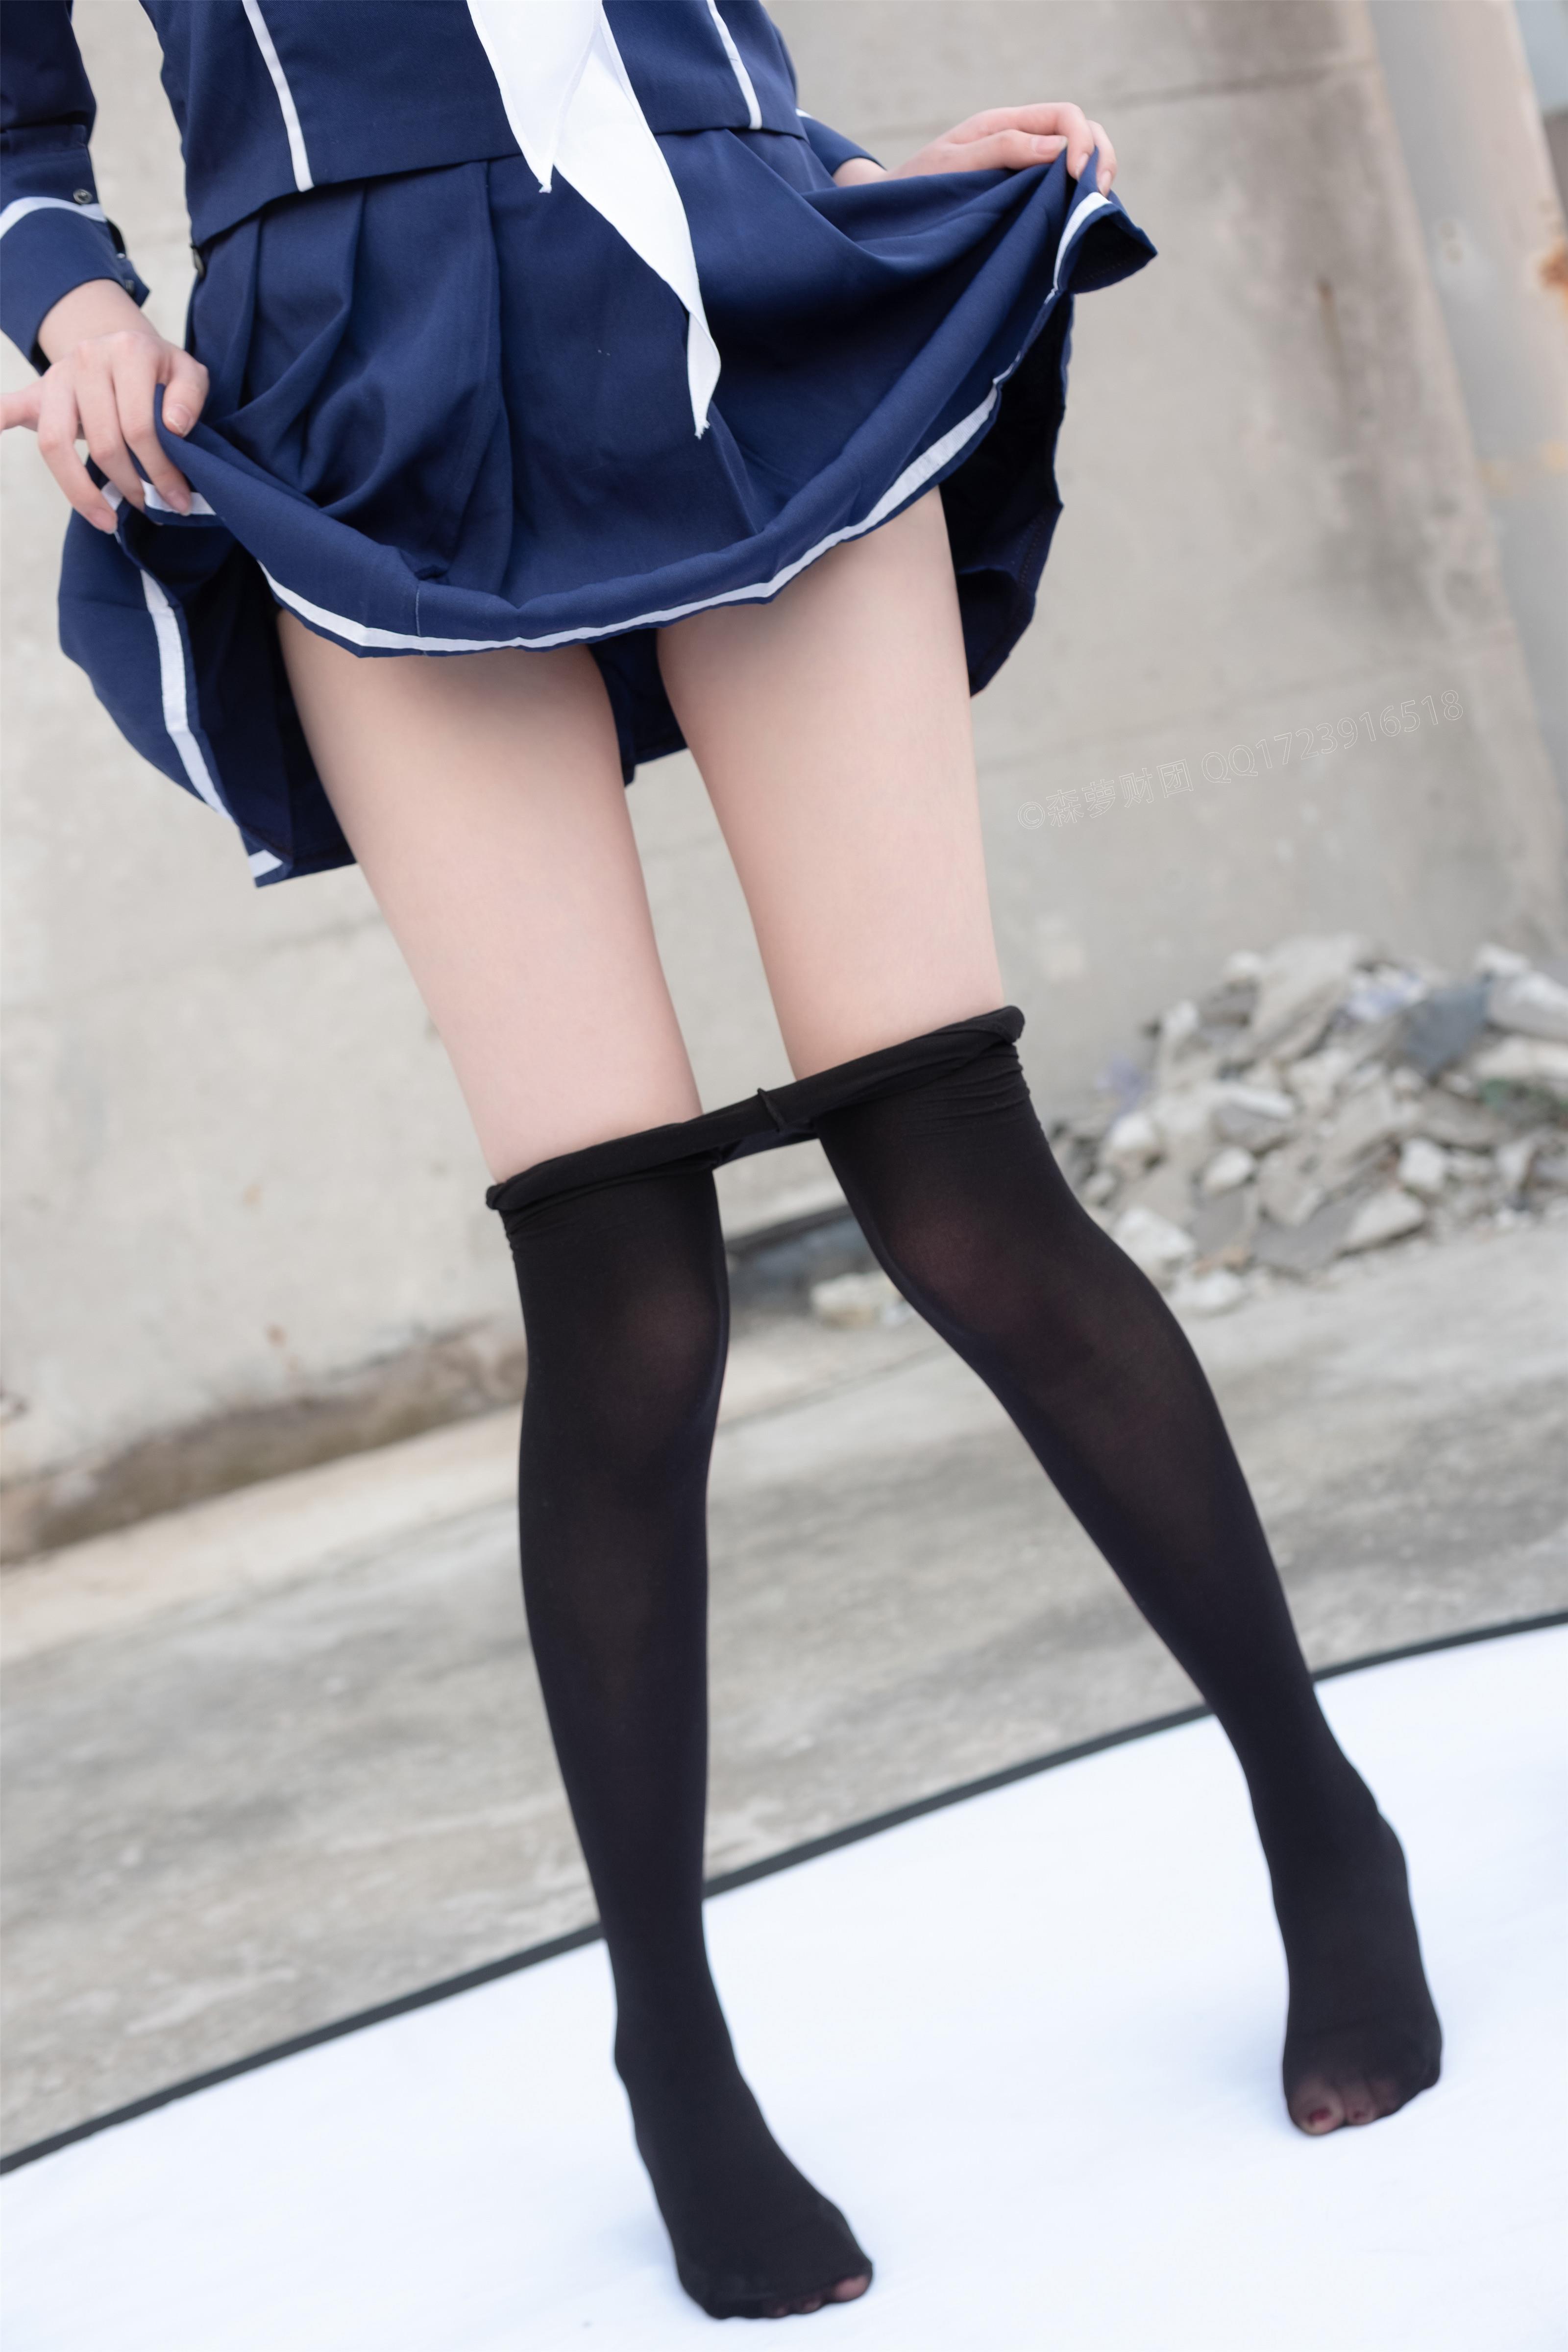 [森萝财团]X-043 学校天台上的小萝莉 高中女生制服与短裙加黑色丝袜美腿性感私房写真集,